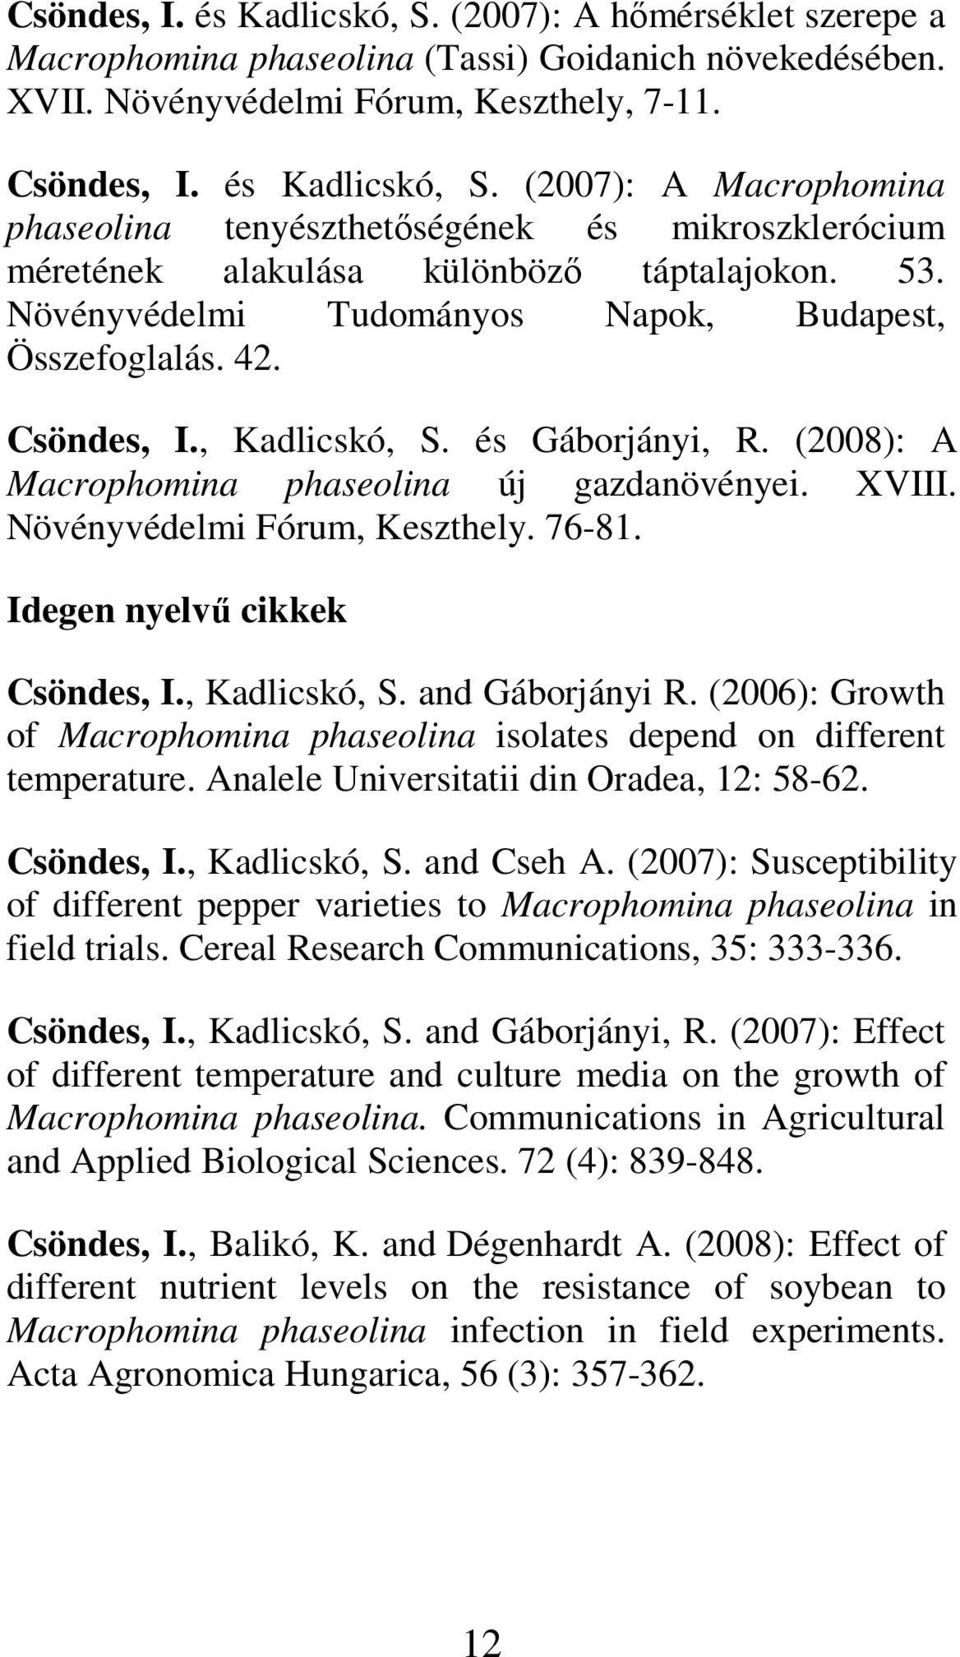 76-81. Idegen nyelvő cikkek Csöndes, I., Kadlicskó, S. and Gáborjányi R. (2006): Growth of Macrophomina phaseolina isolates depend on different temperature.